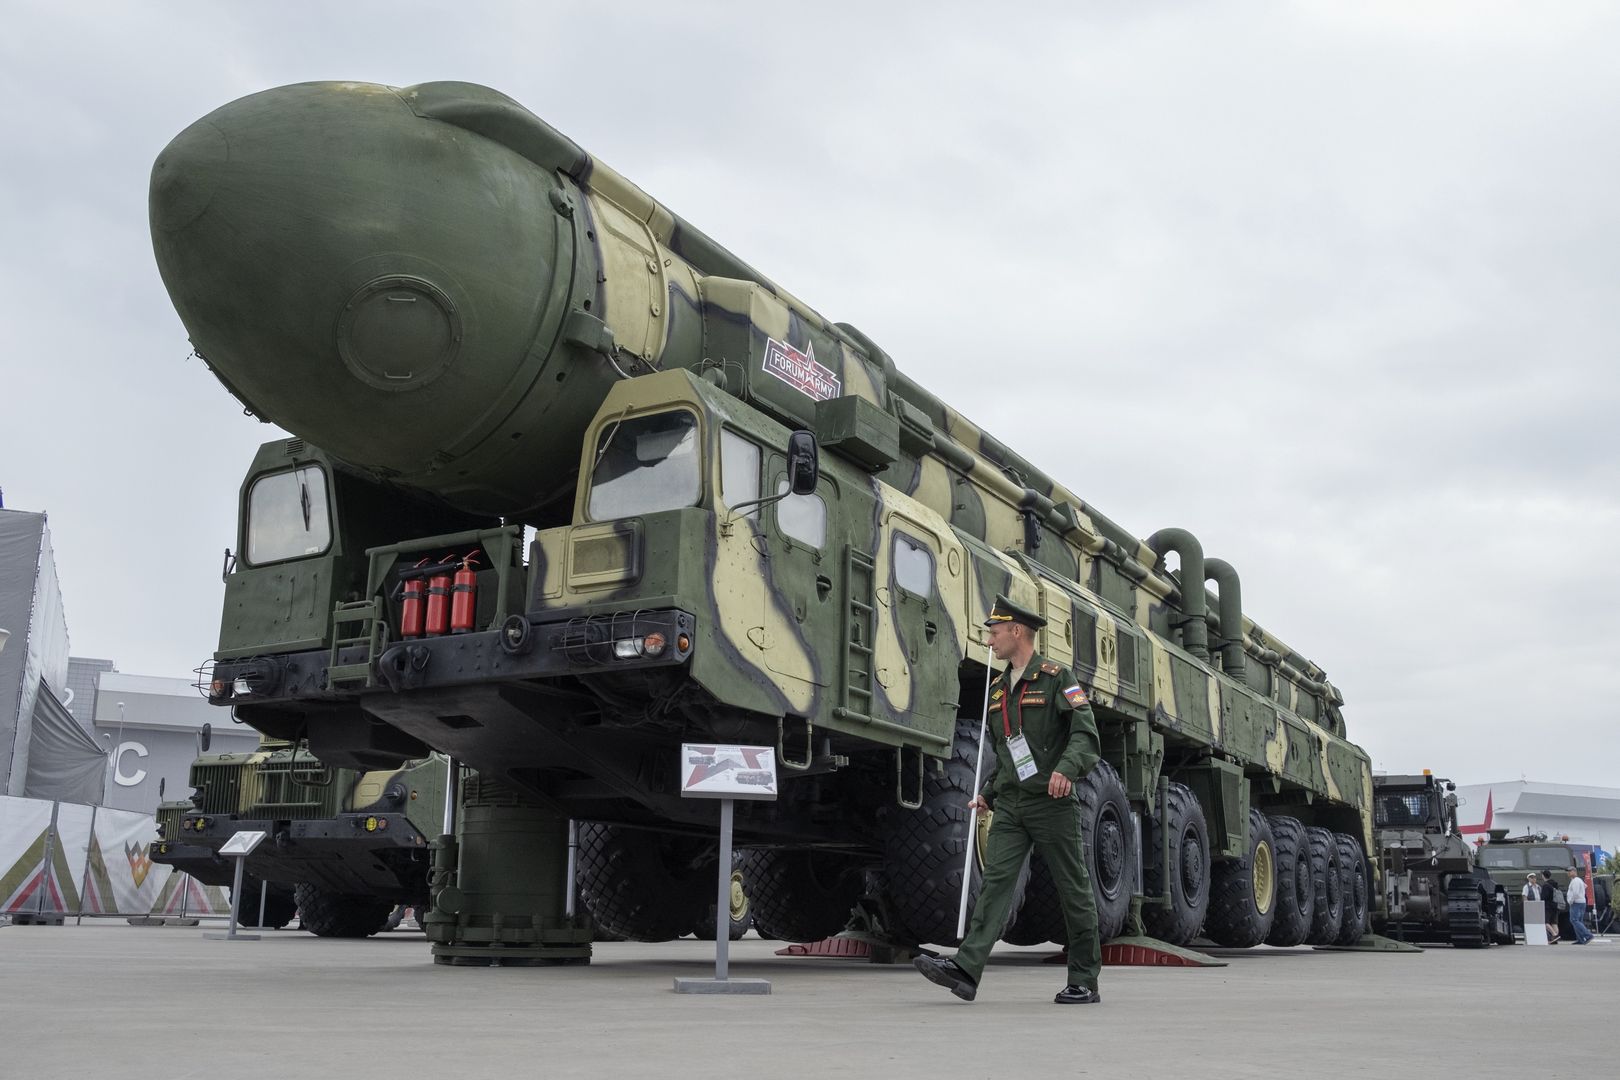 Putin sięgnie po broń atomową? Gen. Koziej: Nie wykluczałbym